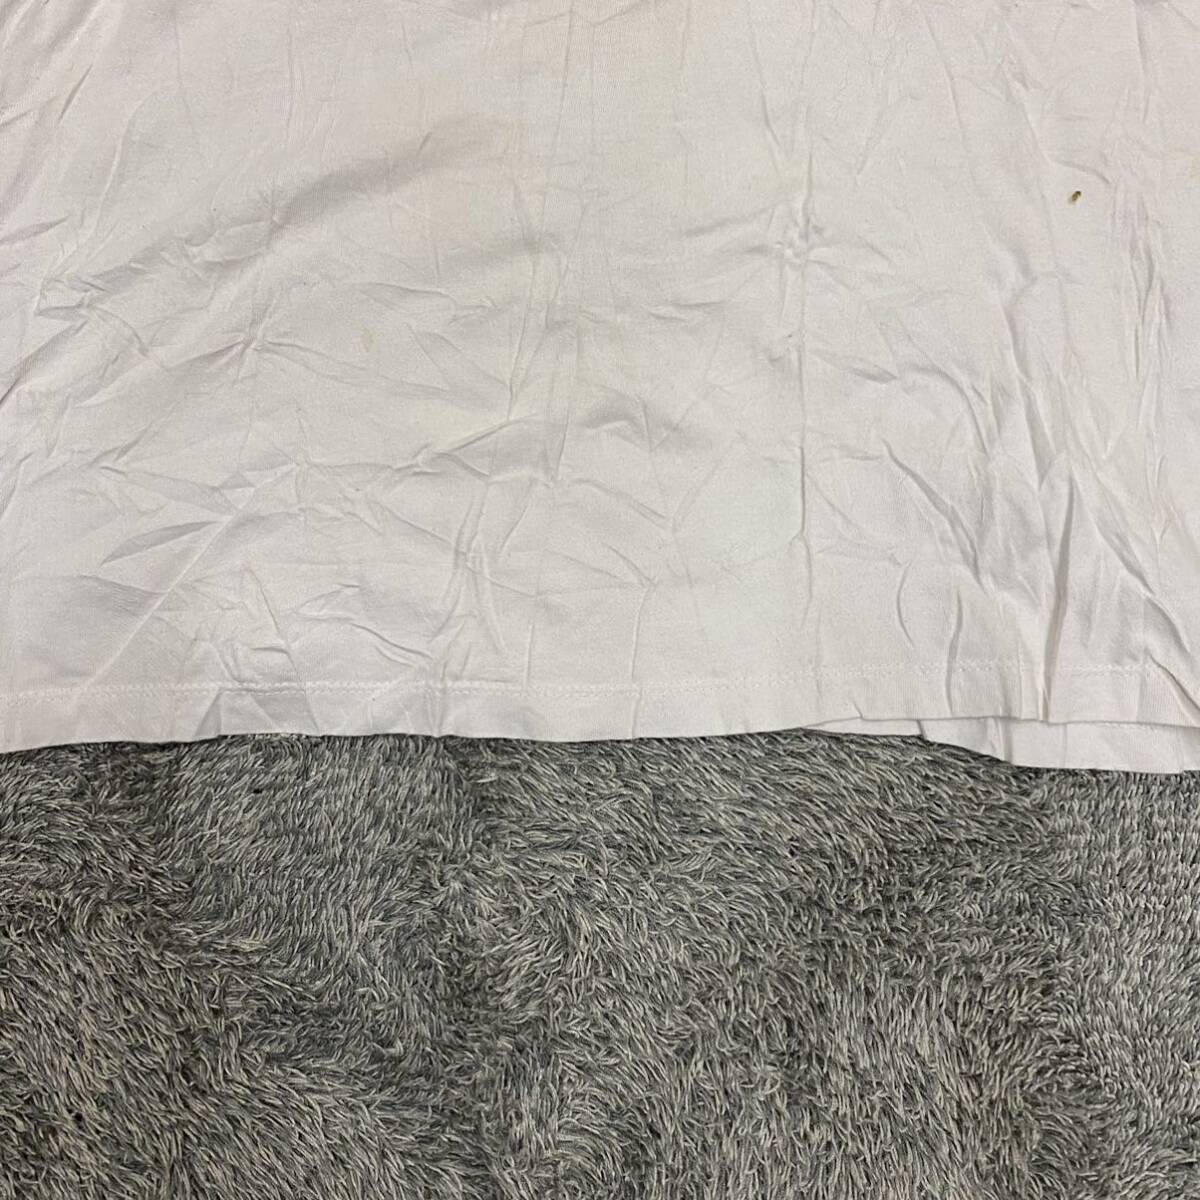 GUESS Guess футболка с длинным рукавом трикотажный джемпер с длинным рукавом long T размер M белый мужской tops нет максимальной ставки (Q17)